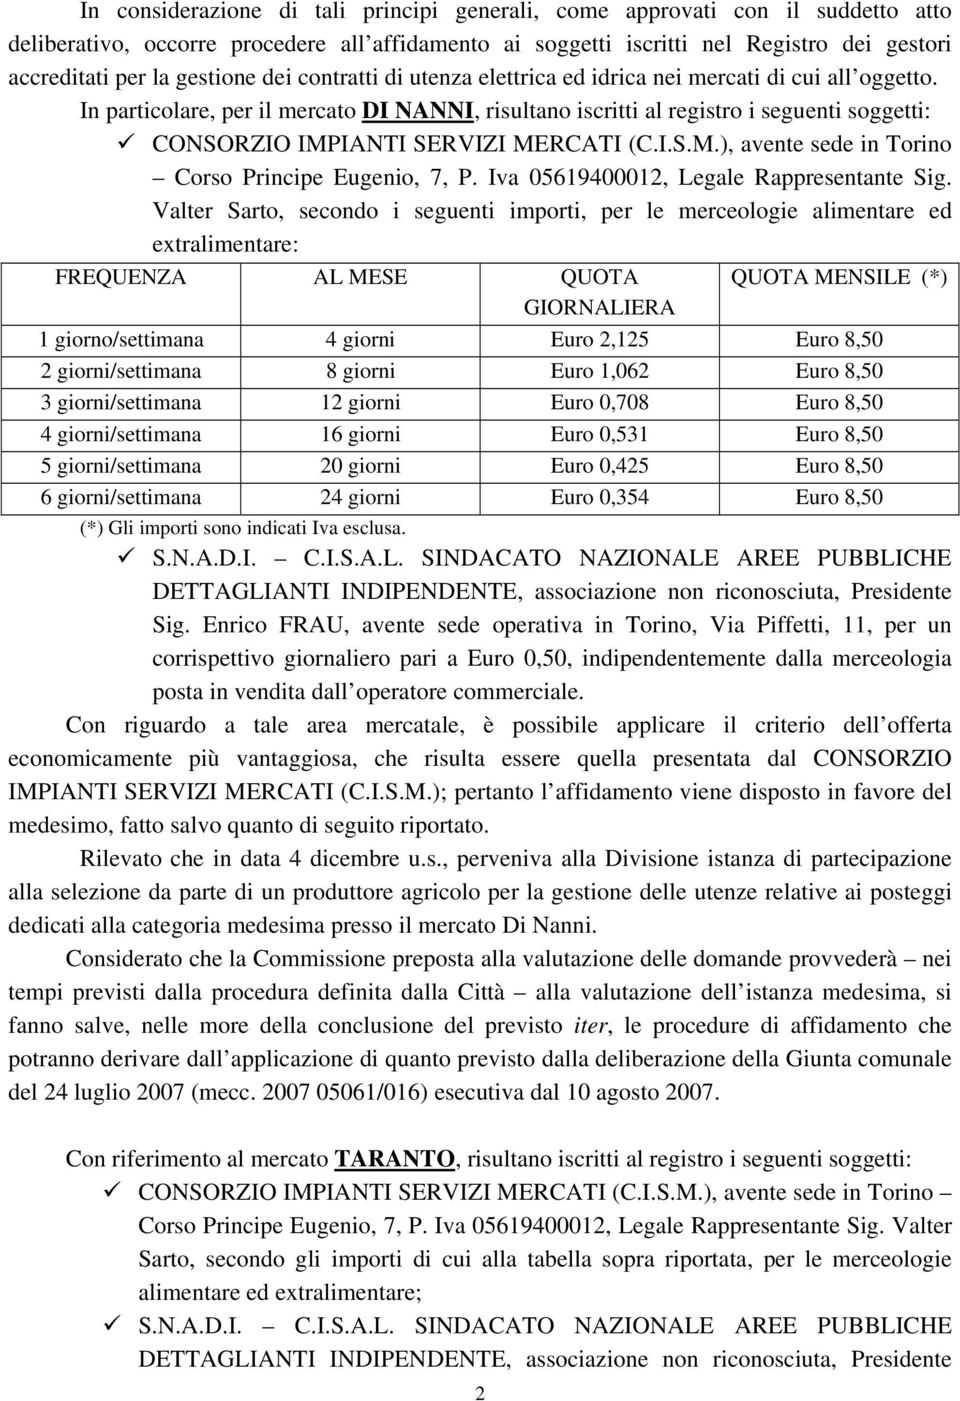 In particolare, per il mercato DI NANNI, risultano iscritti al registro i seguenti soggetti: CONSORZIO IMPIANTI SERVIZI MERCATI (C.I.S.M.), avente sede in Torino Corso Principe Eugenio, 7, P.